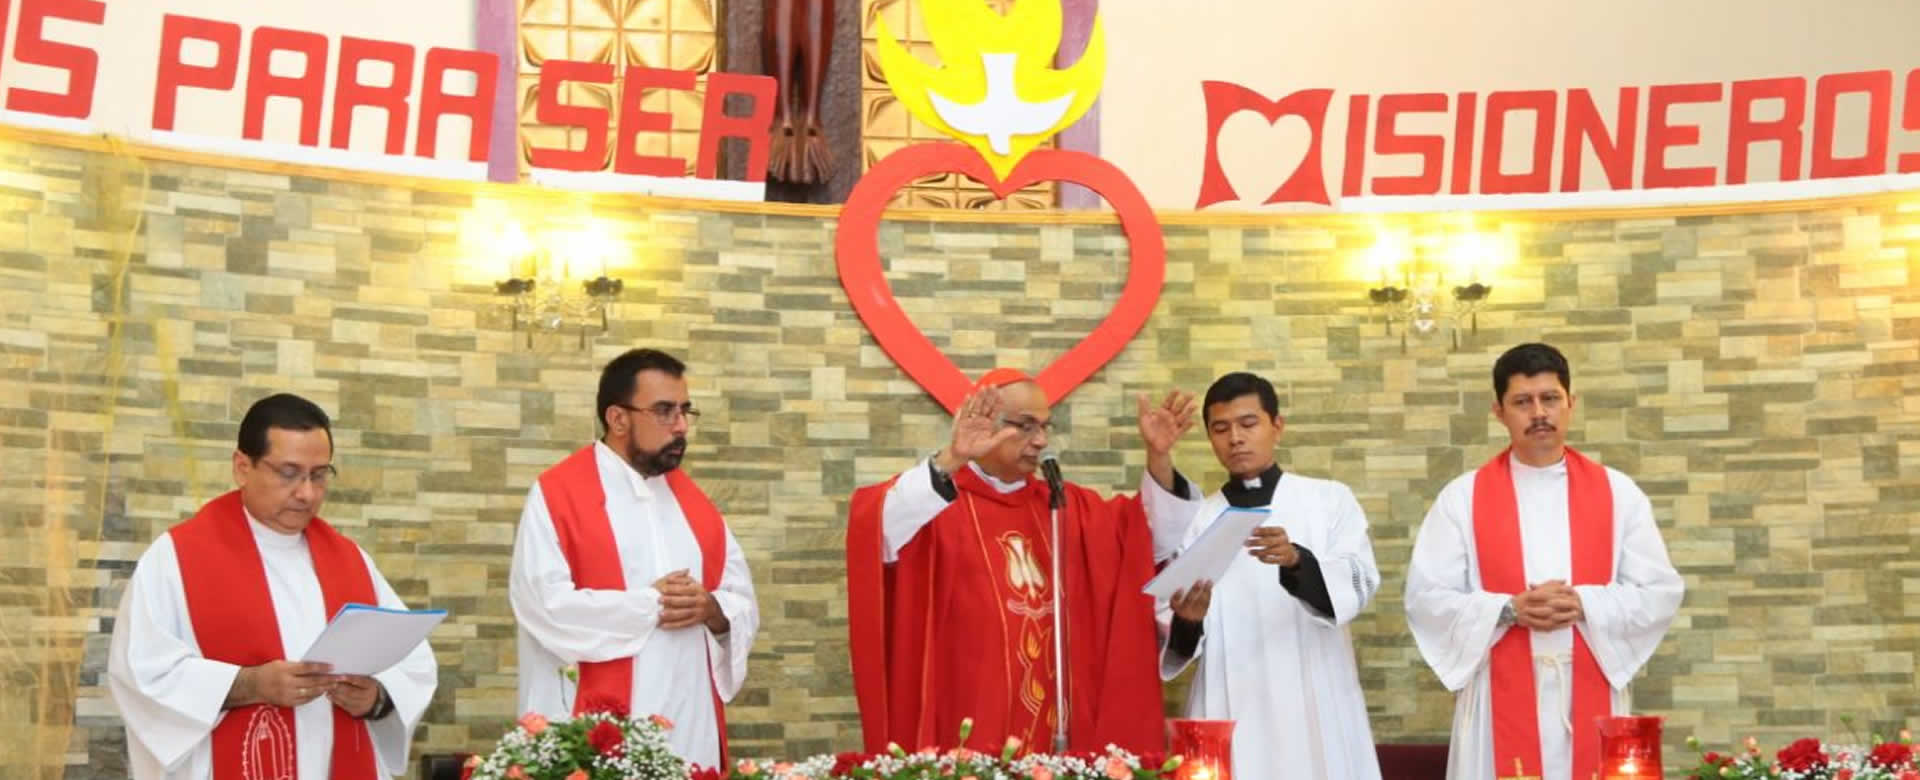 Iglesia católica celebra el Día Mundial de las Misiones